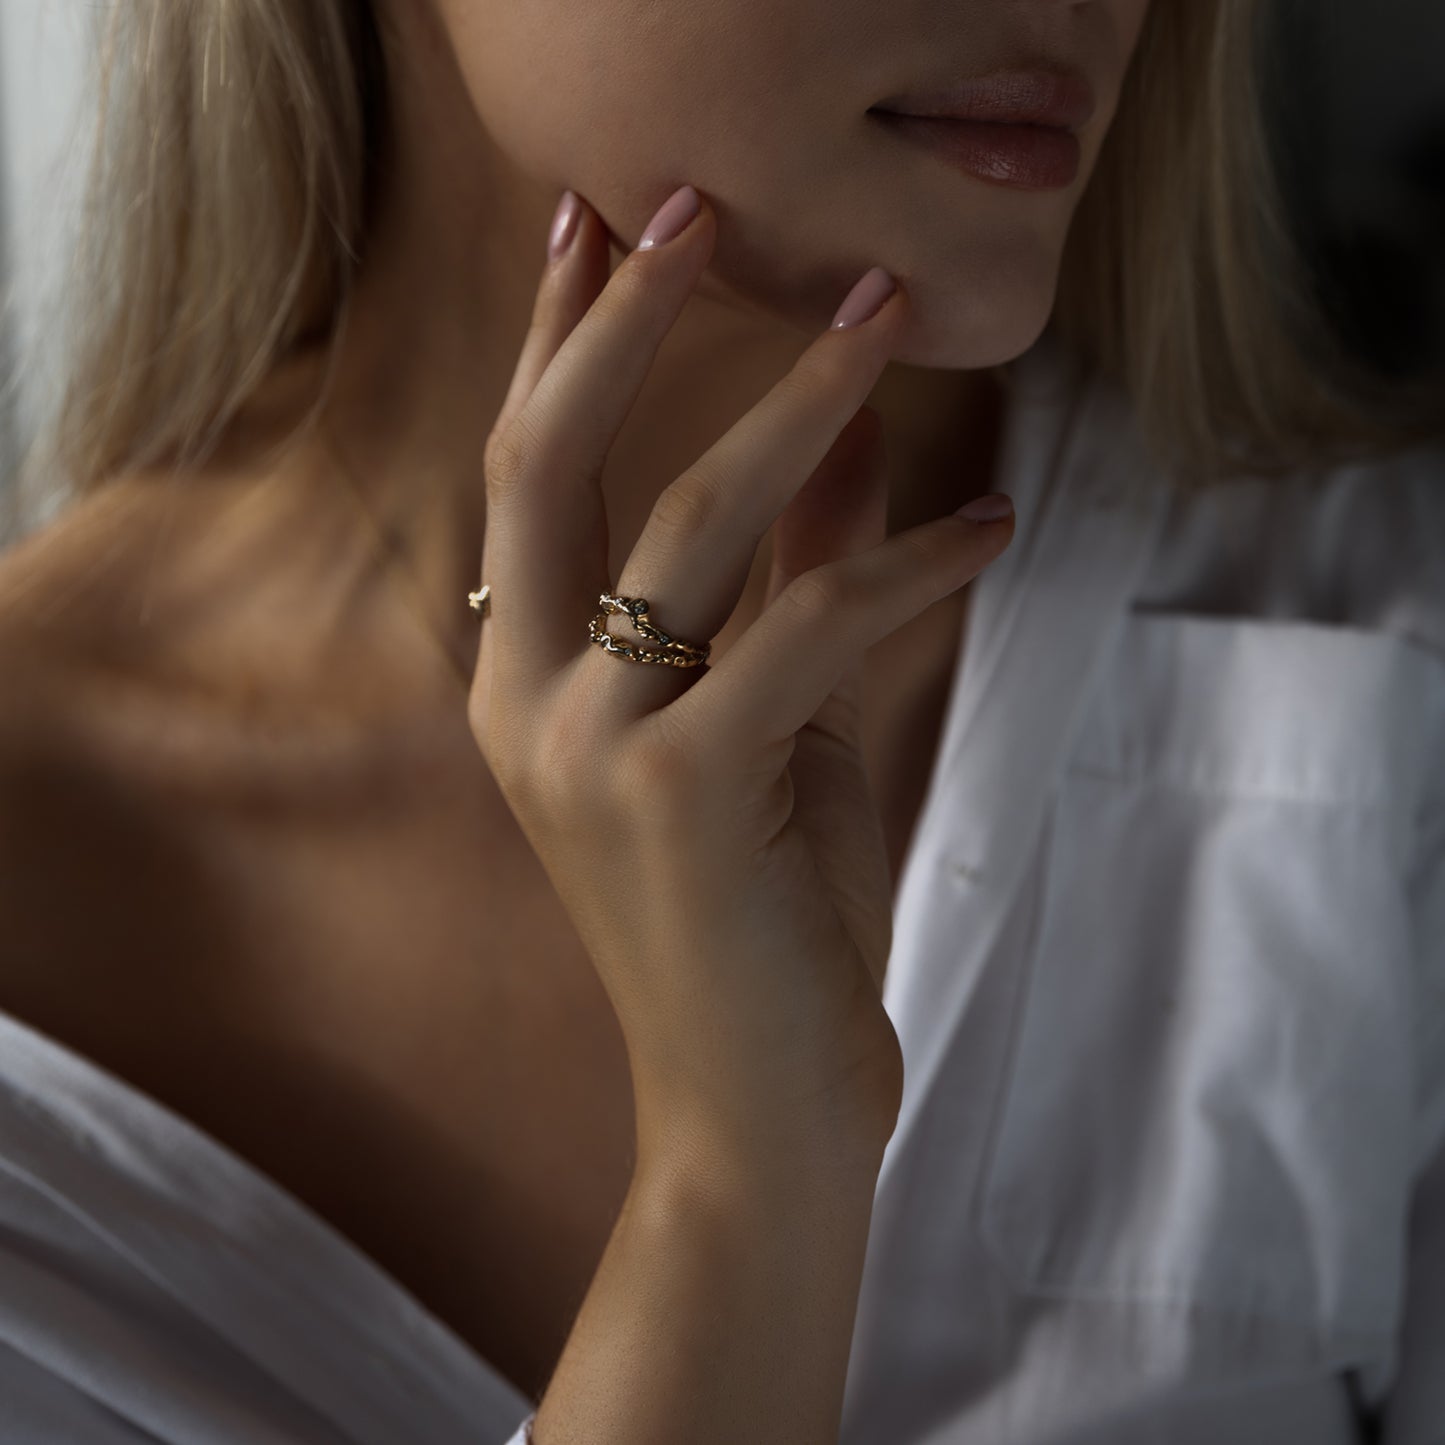 Model kvinde udsnit af hånd og kæbe, hånd holder kæben og på hånden er der to organisk designet guld ringe med diamanter der glimter. Kvinden har en hvid skjorte på der er åben foran.  